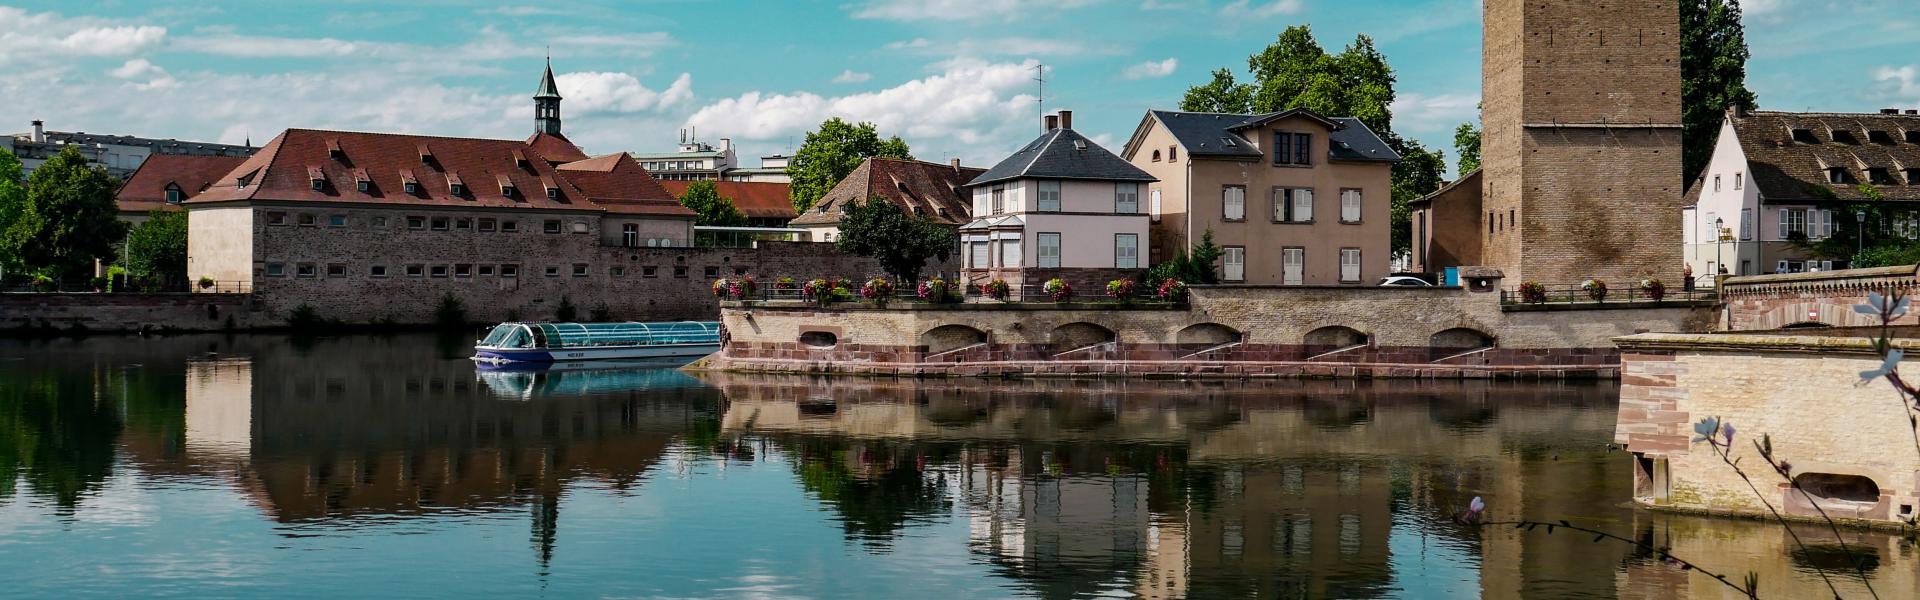 Alquileres y casas de vacaciones en Alsacia - Wimdu